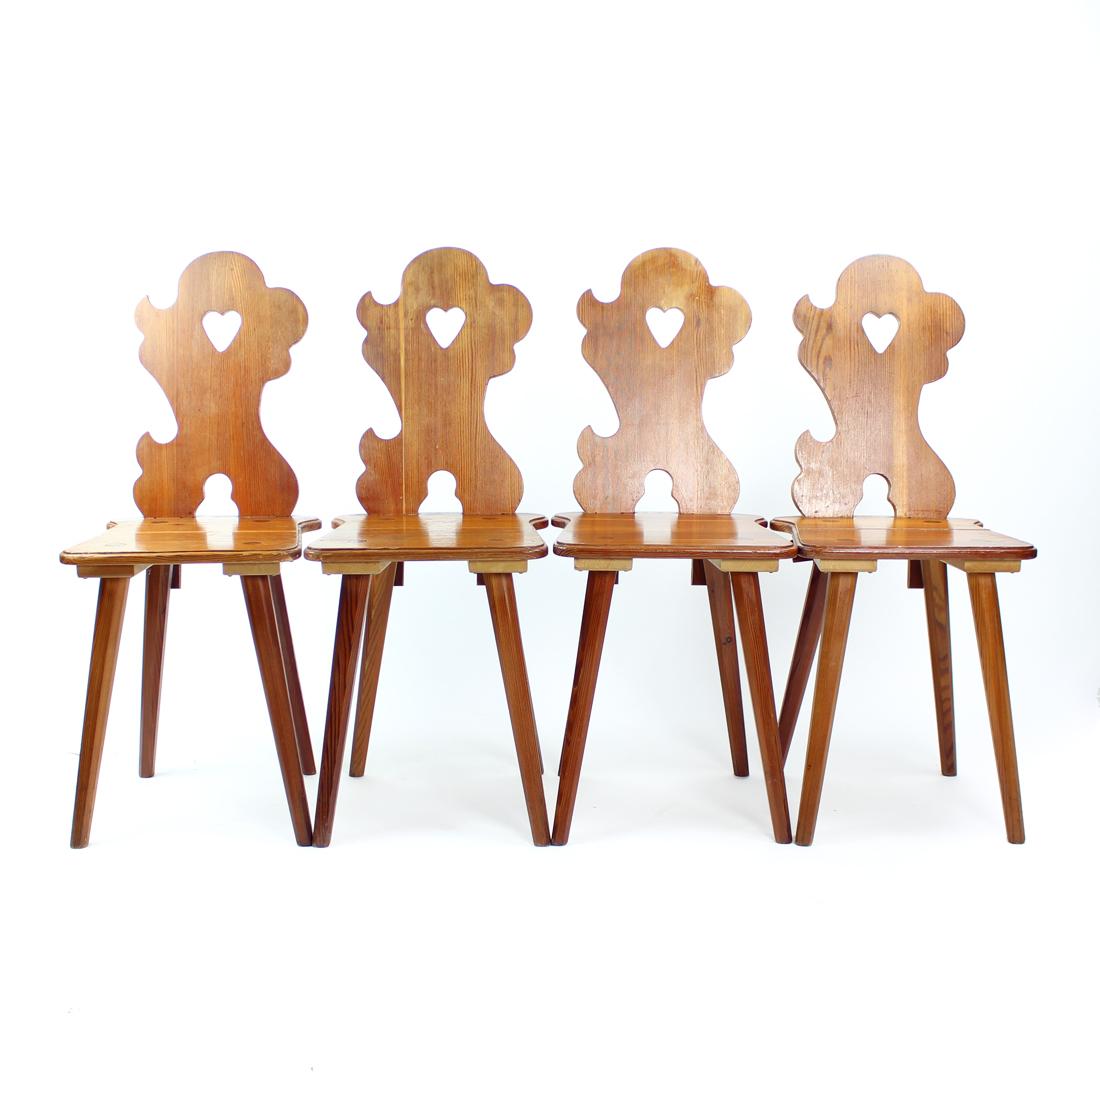 Bel ensemble de quatre chaises de salle à manger produit en 1973 par la société LIPTA en Tchécoslovaquie. Les chaises sont fabriquées à partir de planches de mélèze sculptées. Les chaises présentent un beau design issu du style folklorique